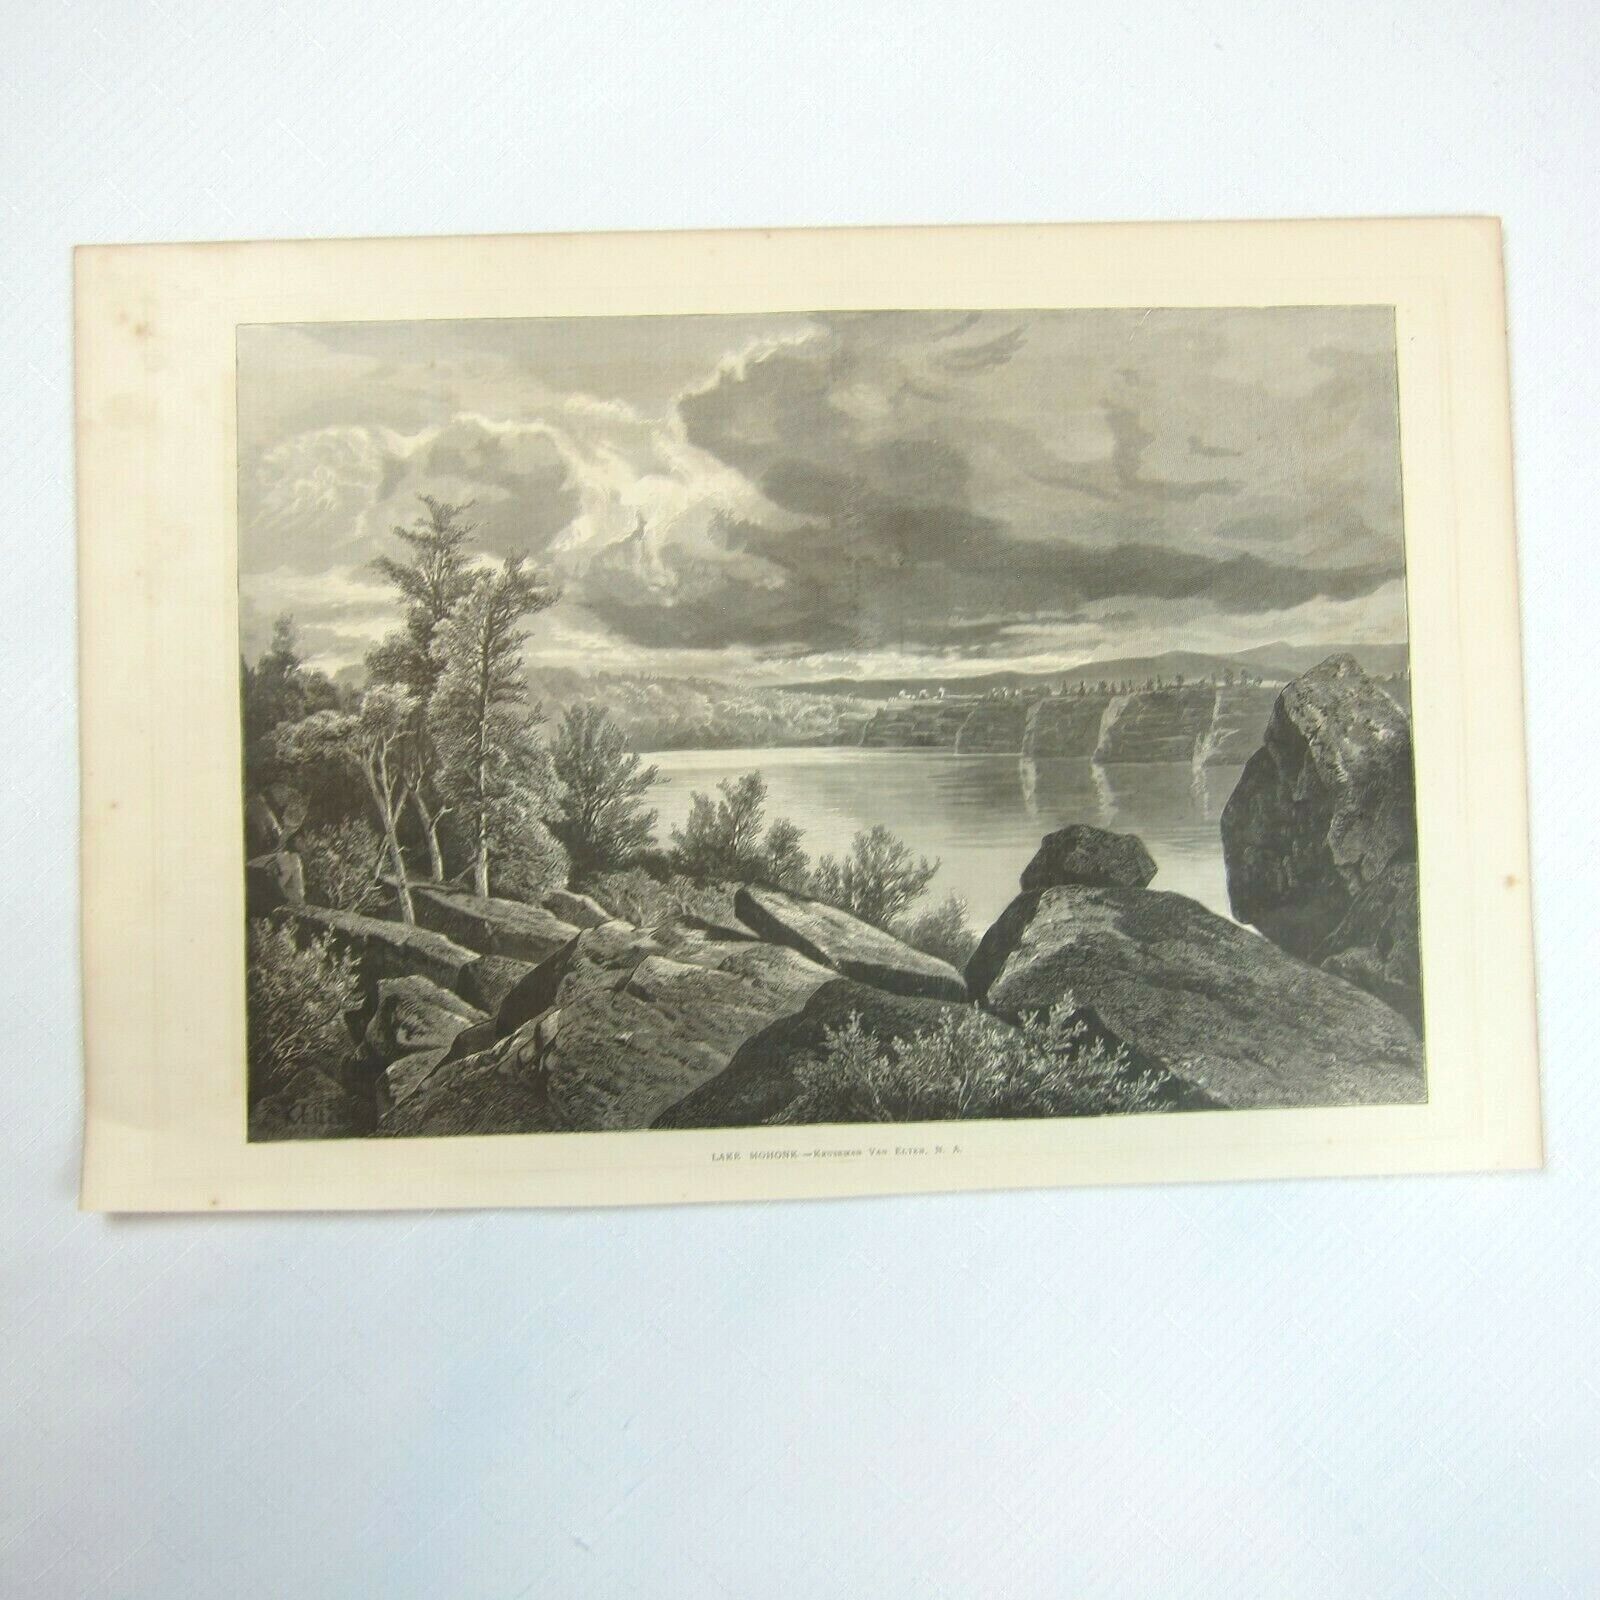 Antique 1875 Wood Engraving Print Lake Mohonk by Kruseman Van Elten - The Aldine